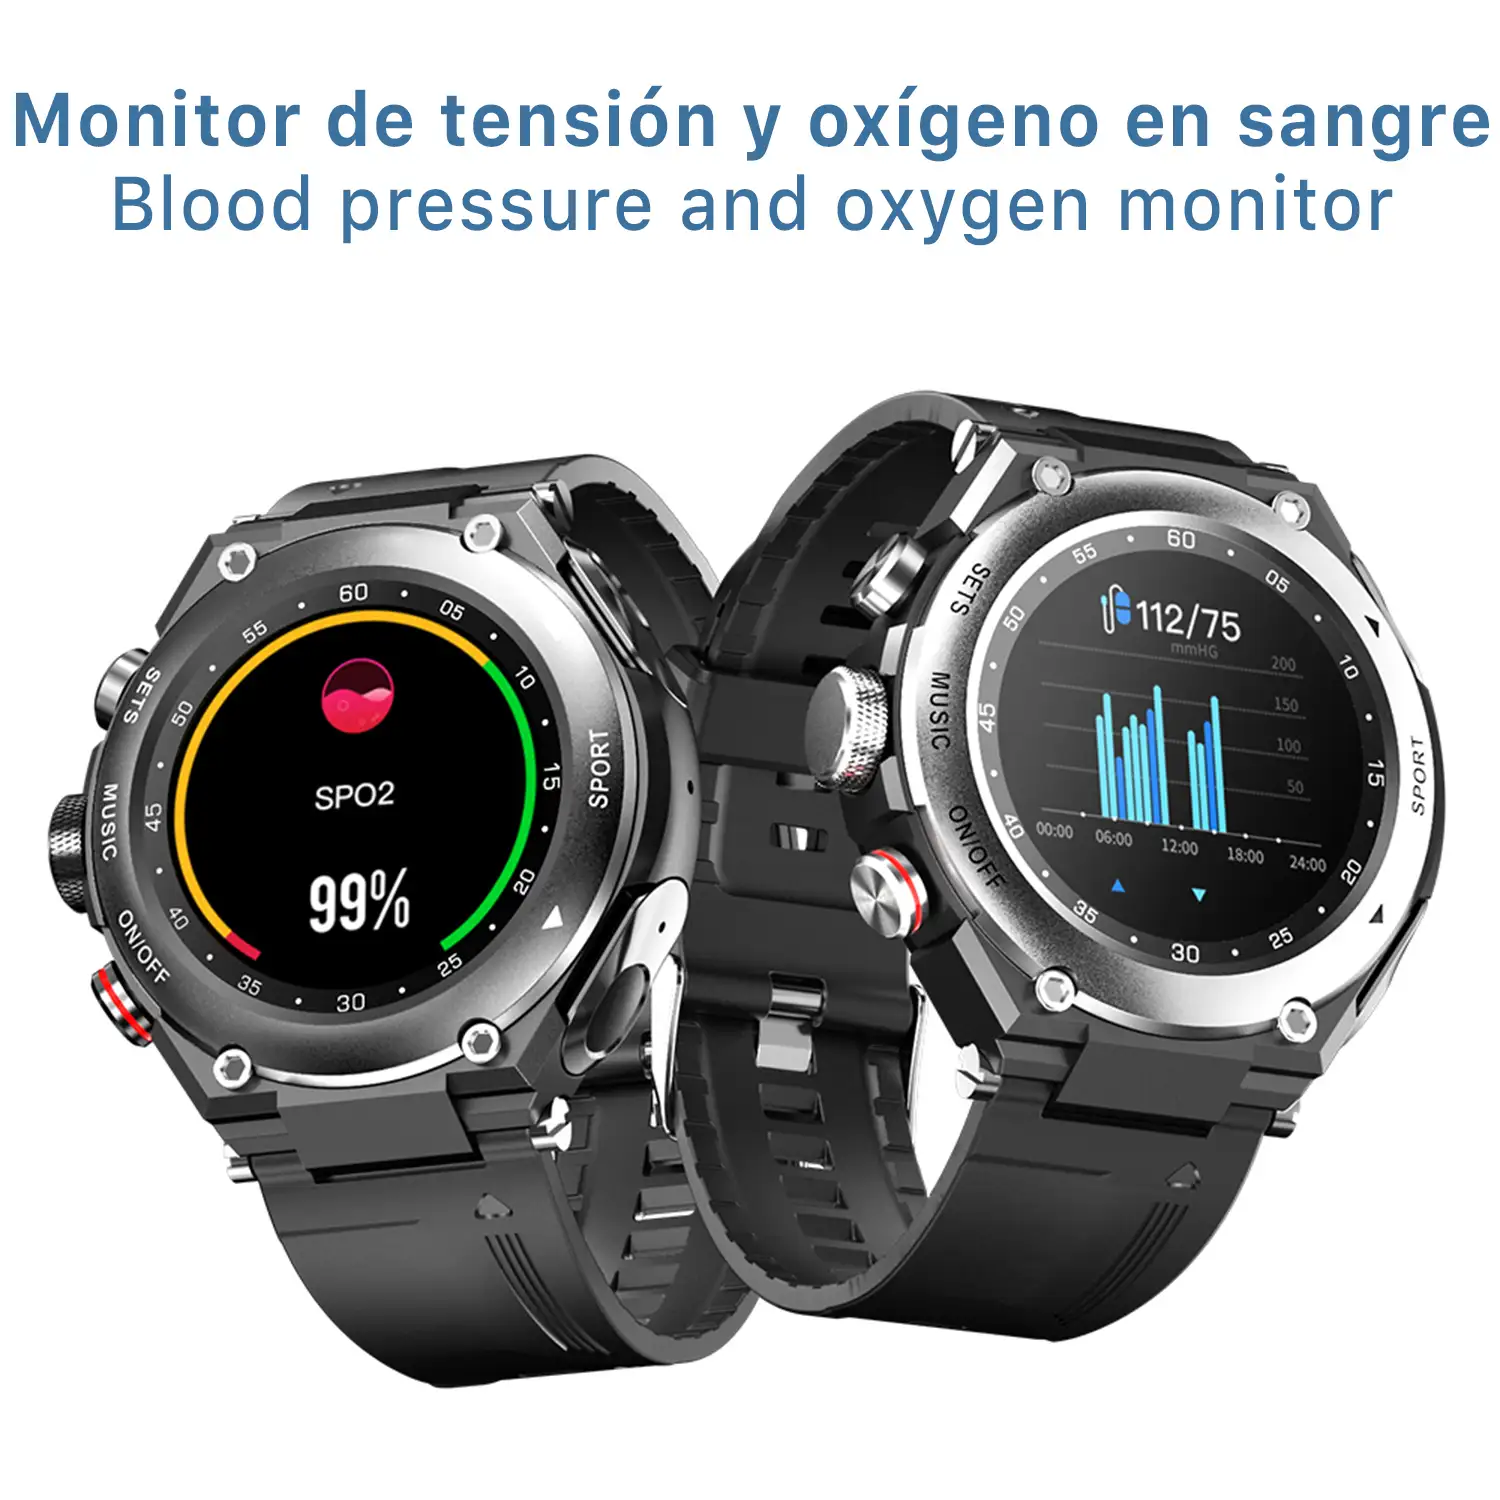 Smartwatch T92 con auriculares TWS integrados y memoria interna para música. Monitor cardiaco y de tensión, O2 en sangre, termómetro.